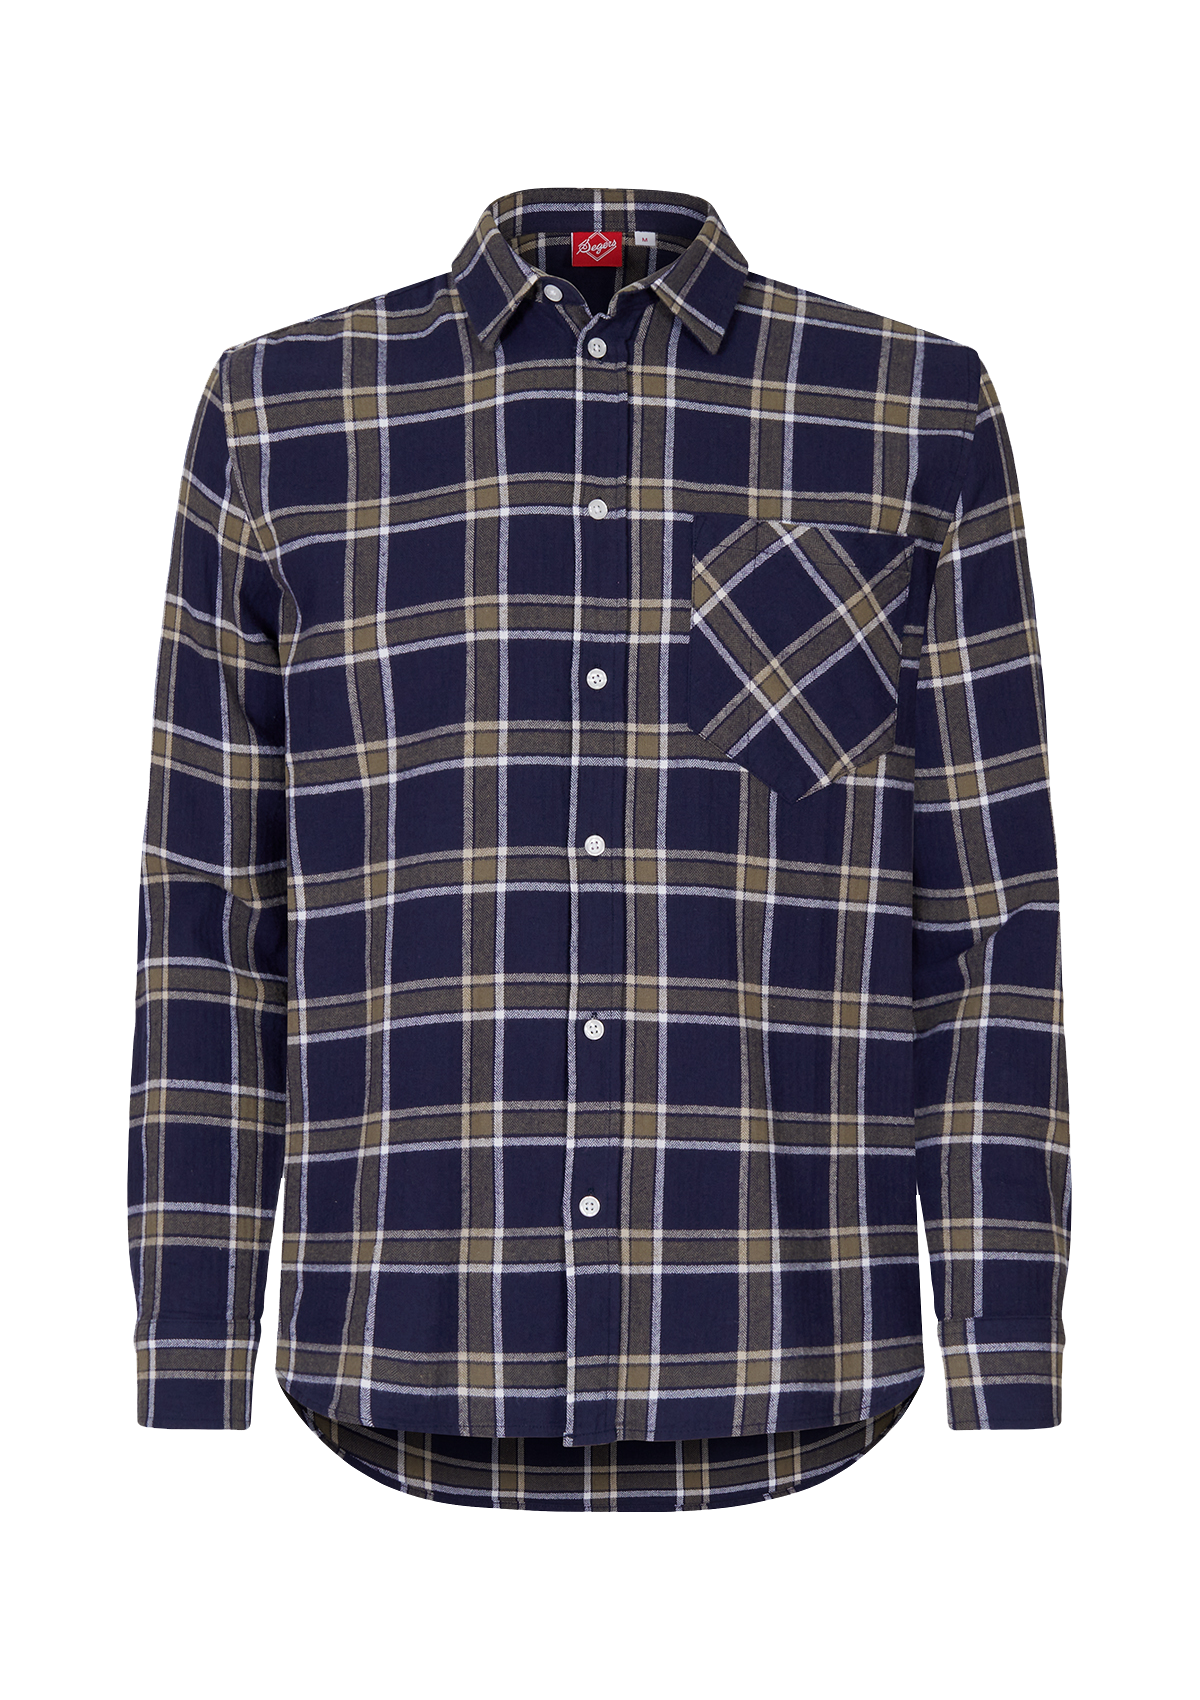 Unisex Flannel Shirt